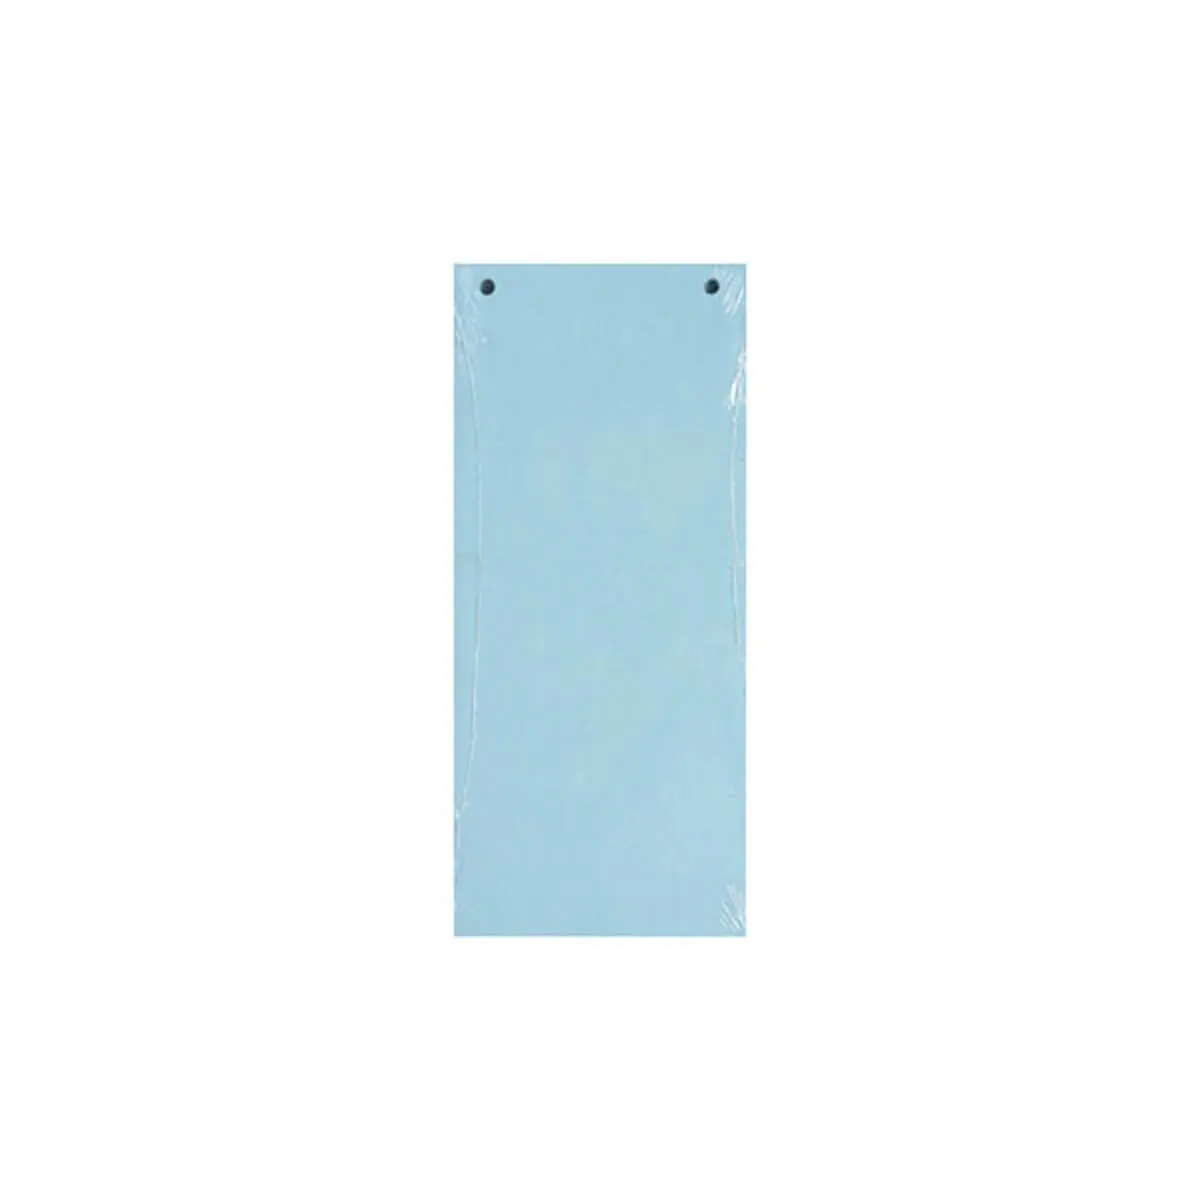 Paquet 100 fiches intercalaires horizontales unies perforées Forever - 105x240mm - Bleu clair - EXACOMPTA photo du produit